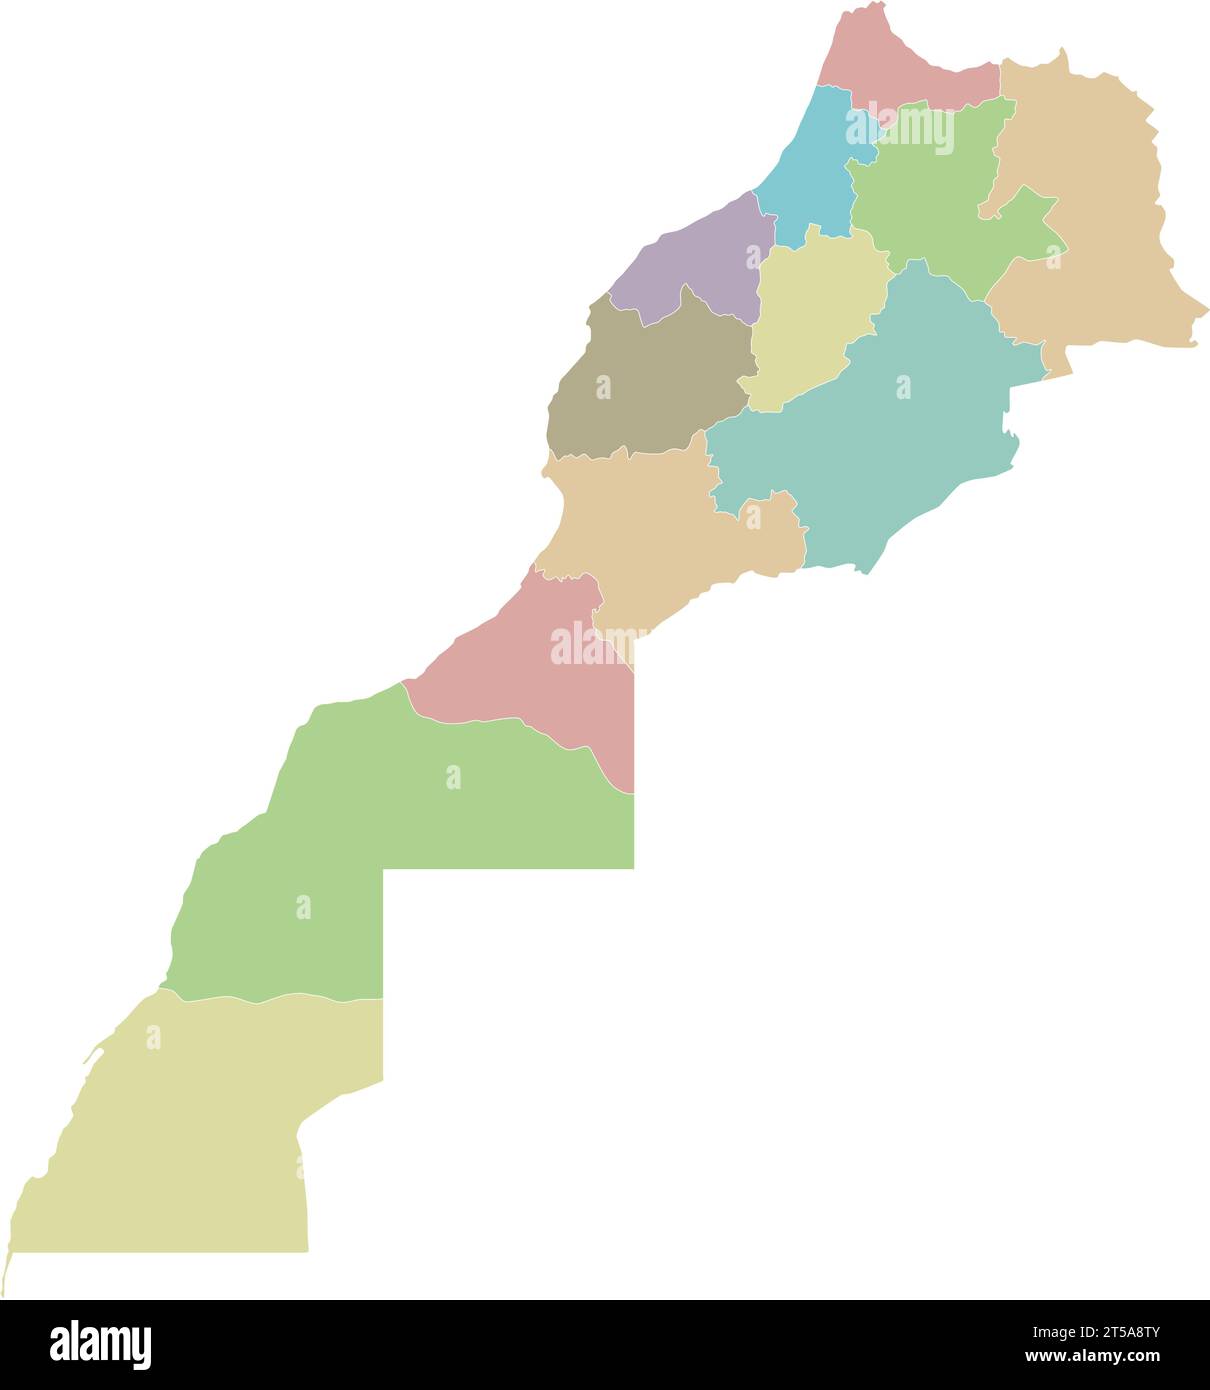 Mappa vettoriale vuota del Marocco con regioni e divisioni amministrative. Livelli modificabili e chiaramente etichettati. Illustrazione Vettoriale